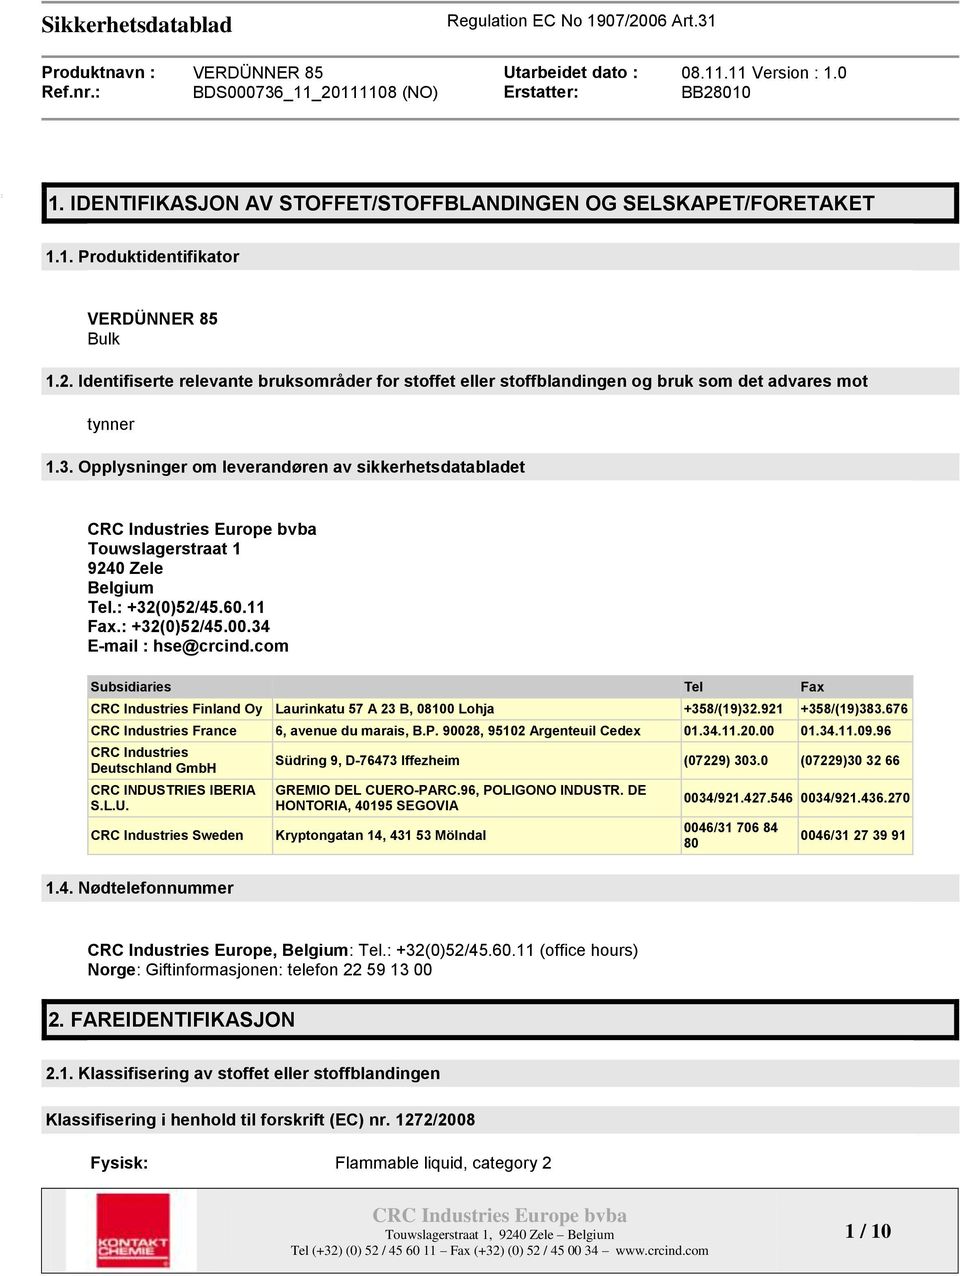 Opplysninger om leverandøren av sikkerhetsdatabladet Touwslagerstraat 1 9240 Zele Belgium Tel.: +32(0)52/45.60.11 Fax.: +32(0)52/45.00.34 E-mail : hse@crcind.